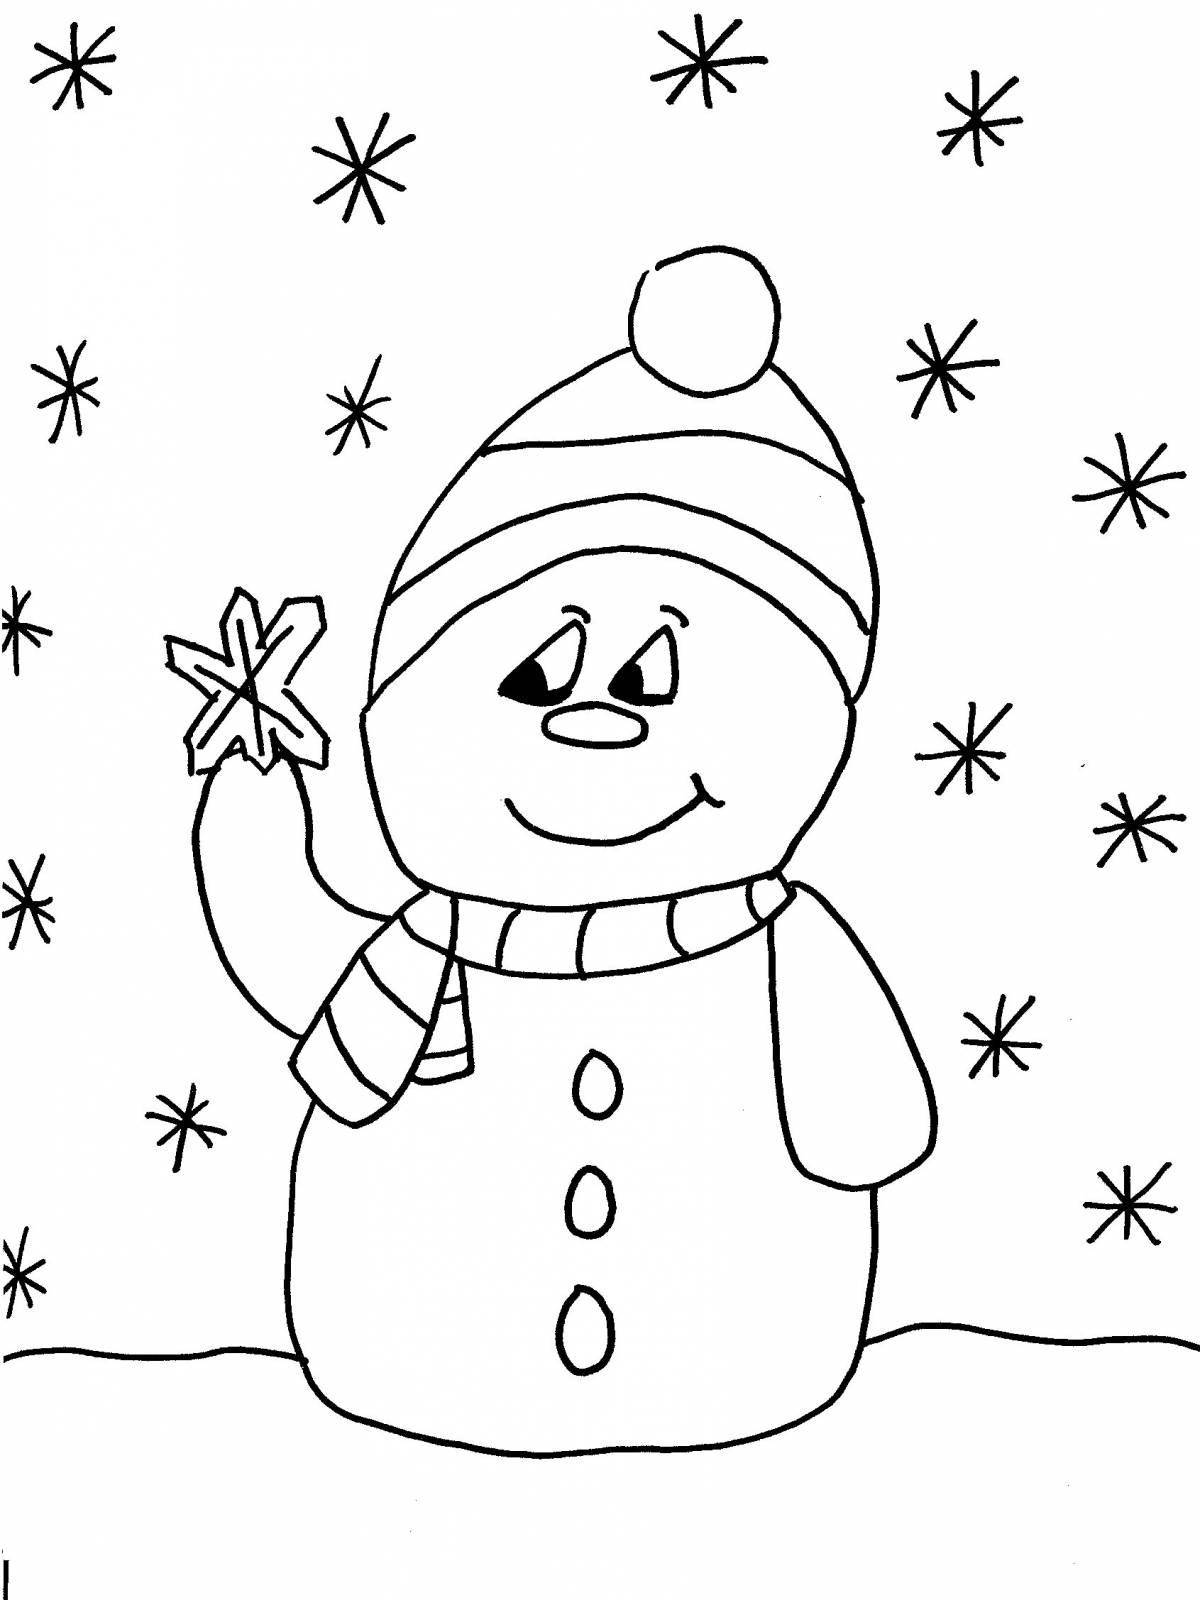 Яркая раскраска снеговик для детей 3-4 лет